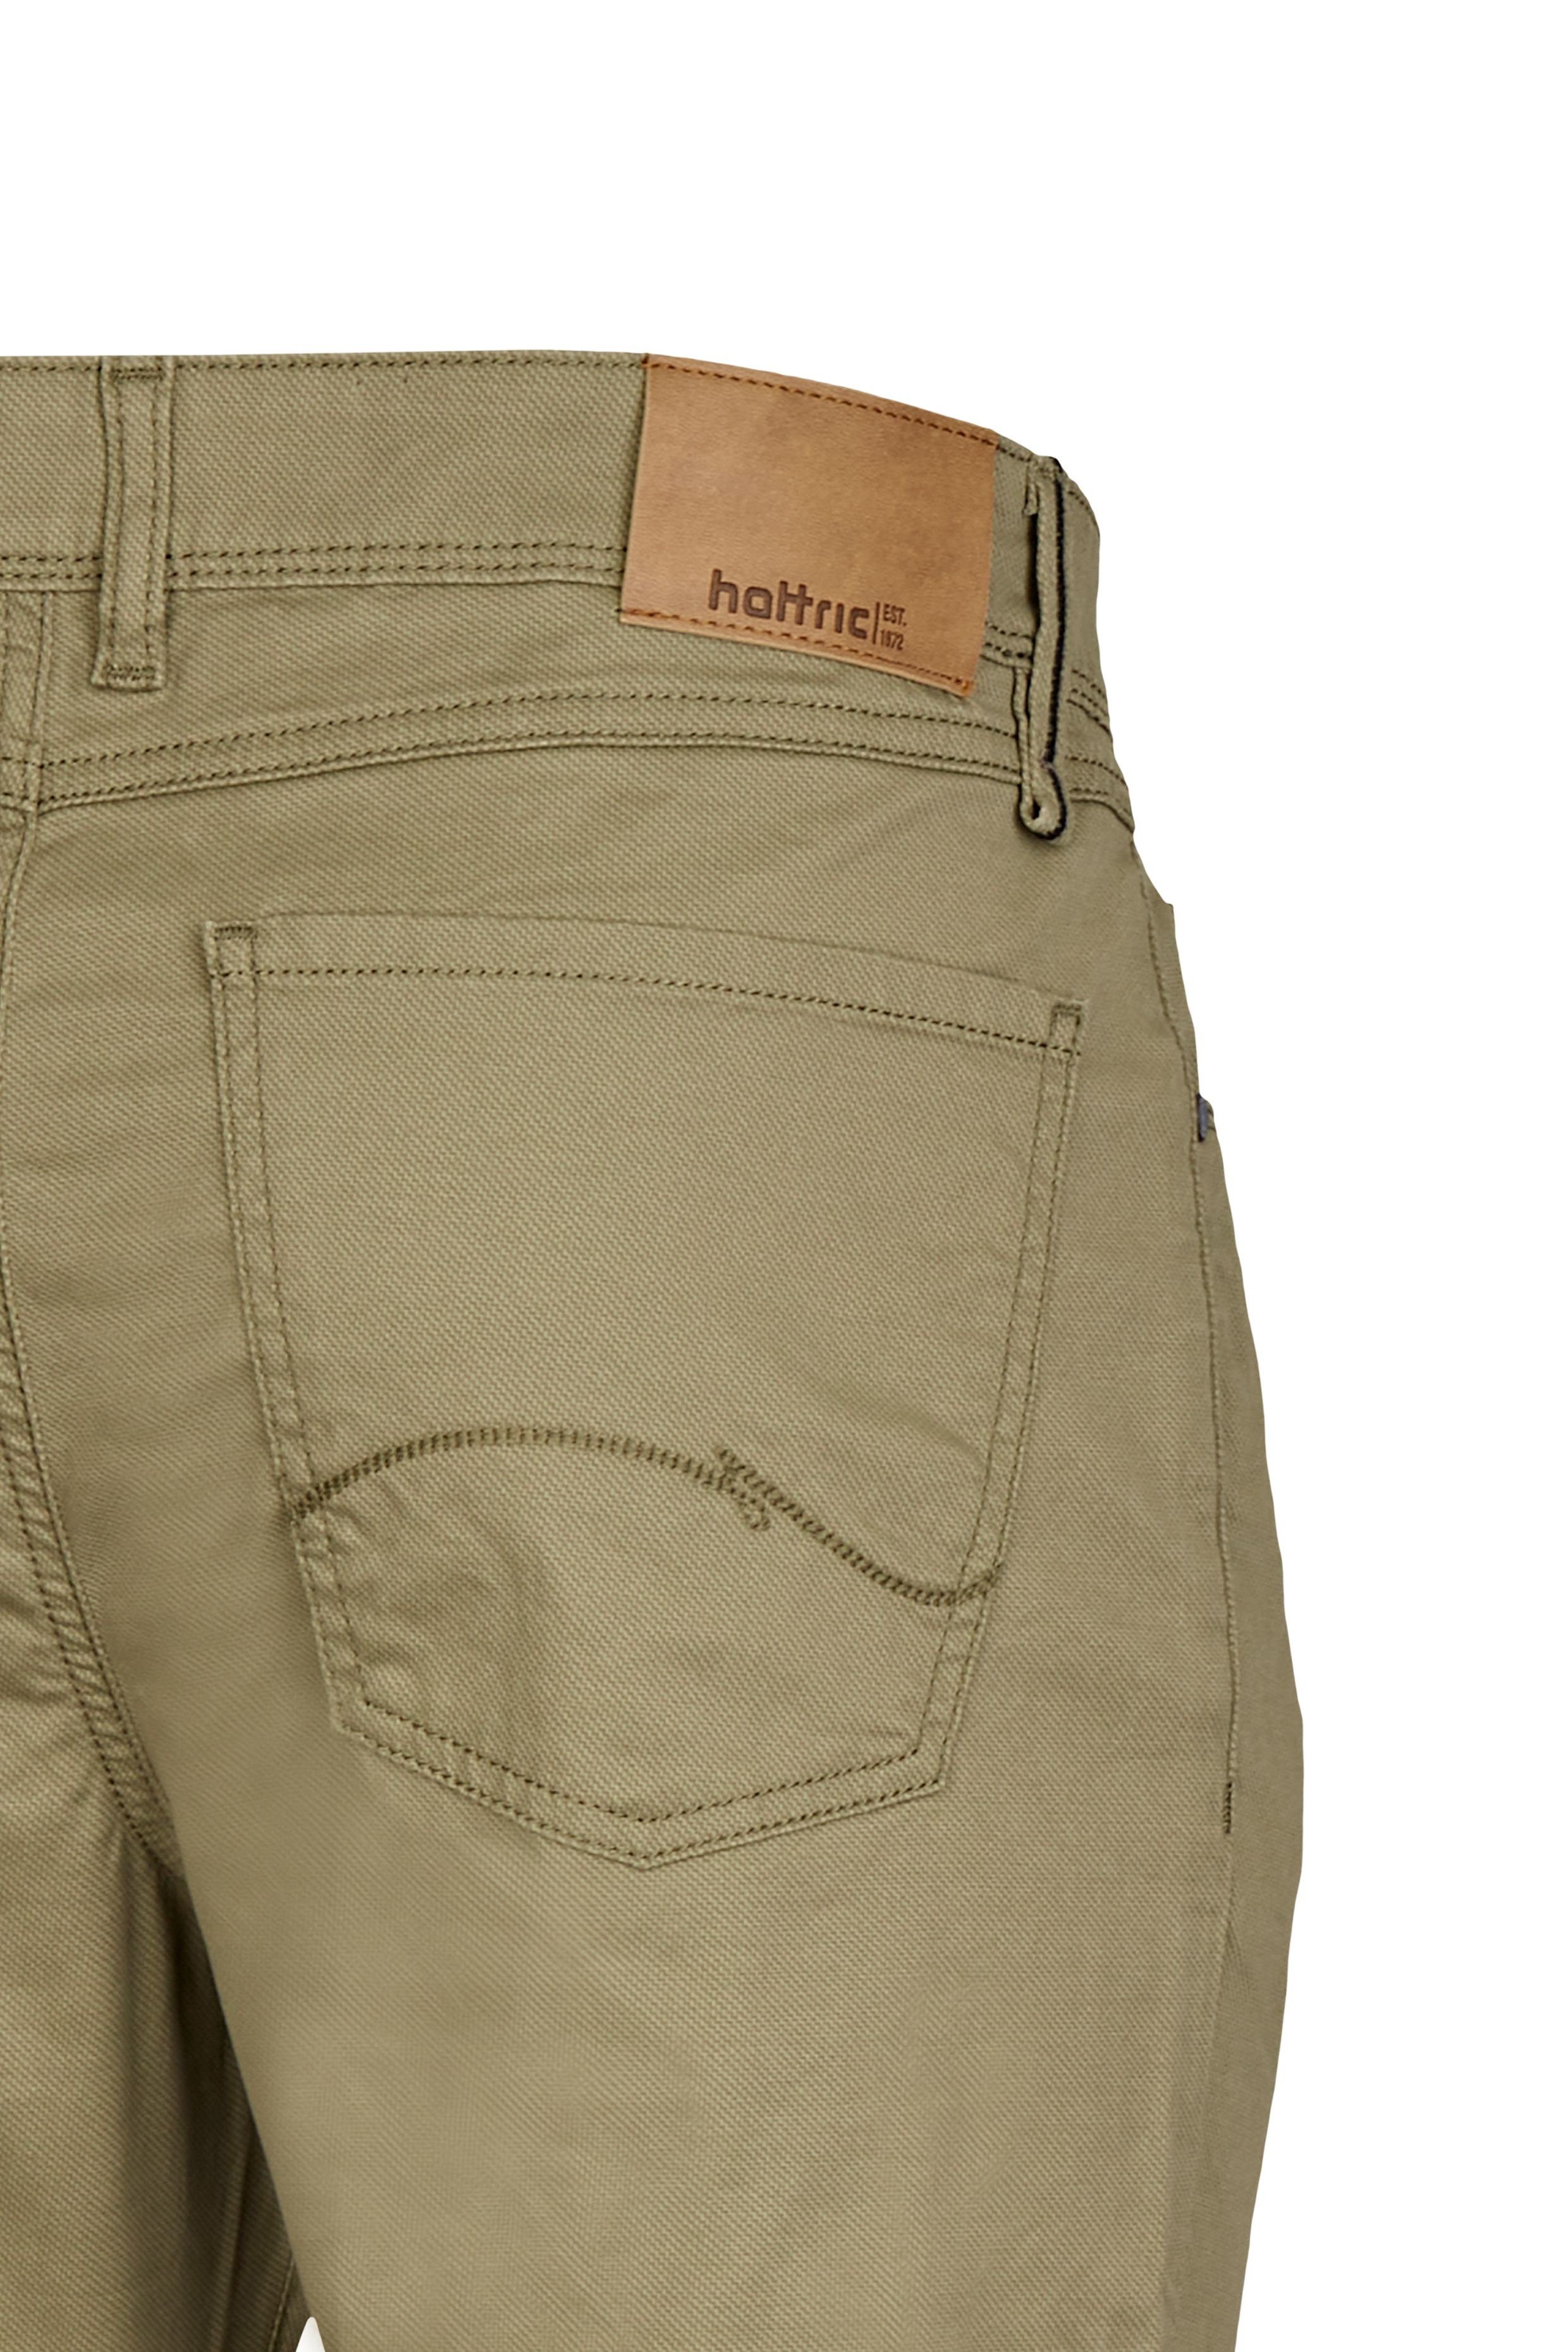 Hattric 5-Pocket-Hose khaki